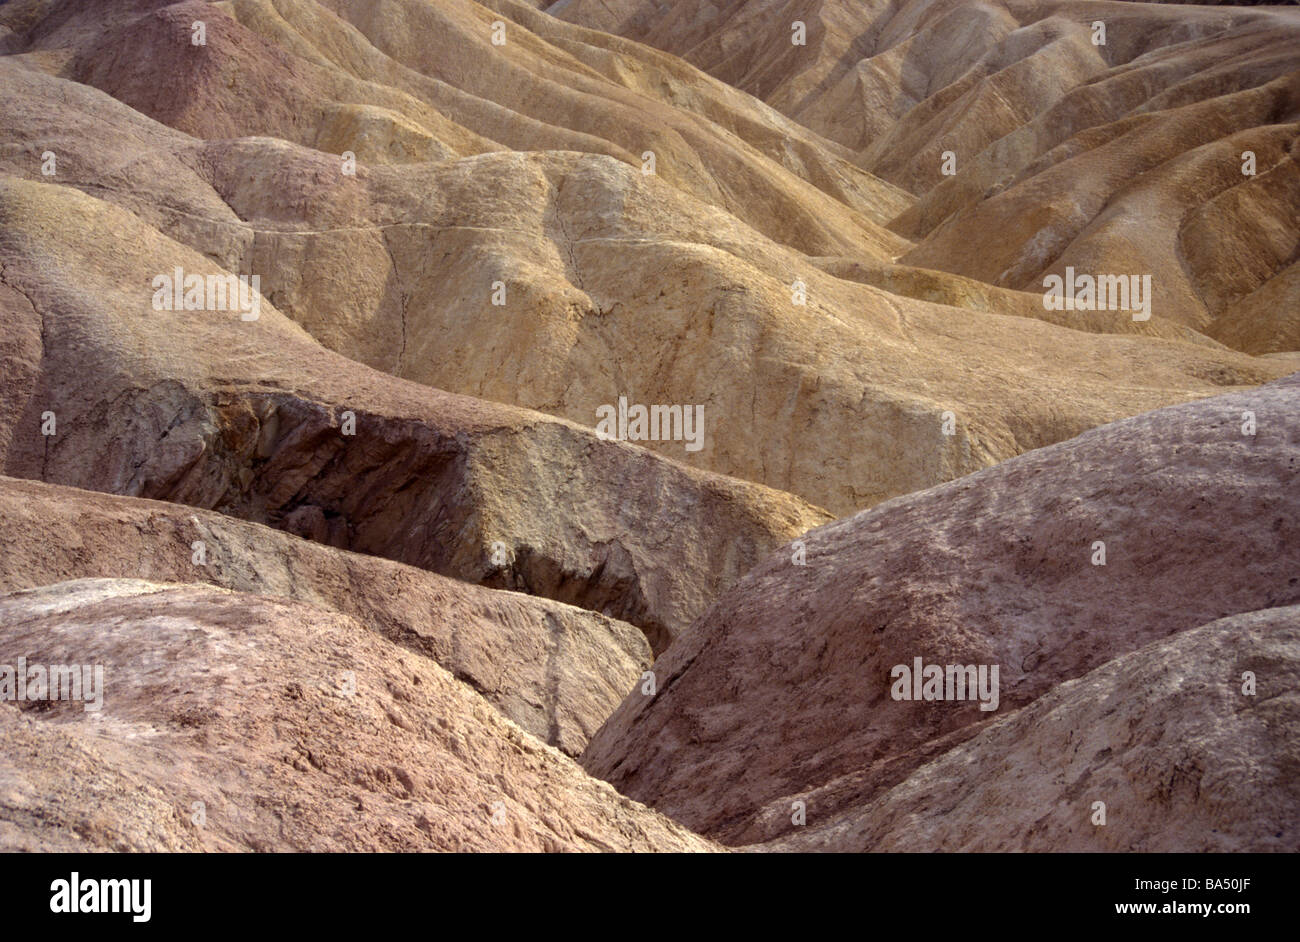 Asciugare arido deserto arido erosi calanchi ruscelli flashfloods incastro speroni di roccia Death Valley California USA Foto Stock